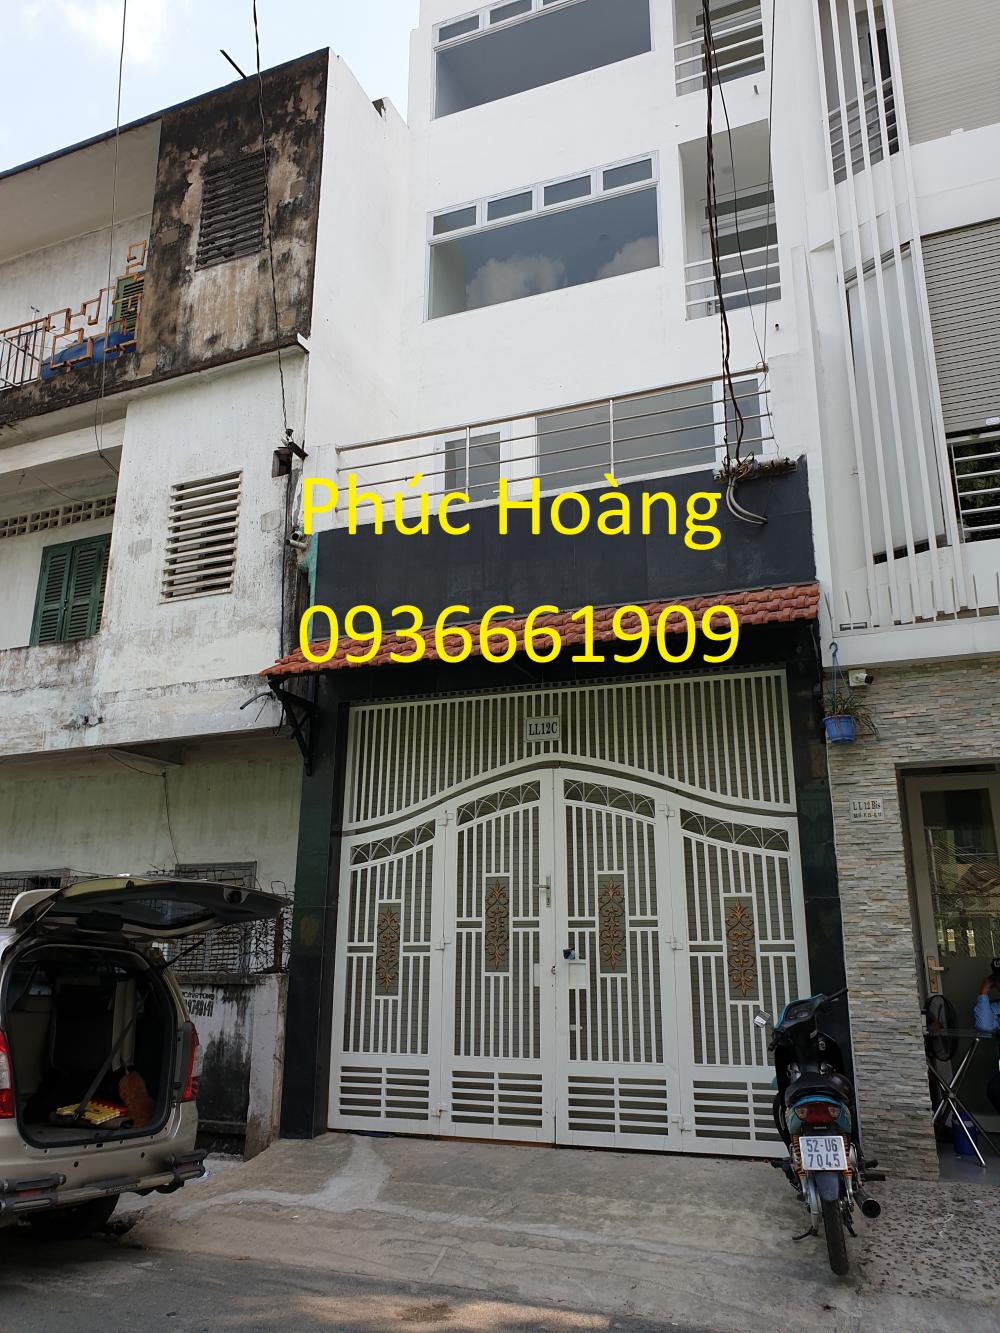 MT Nguyễn Thị Nghĩa  Quận 1. 4x15, 6 lầu, giá 29T .L/h Phúc Hoàng 0936661909 .